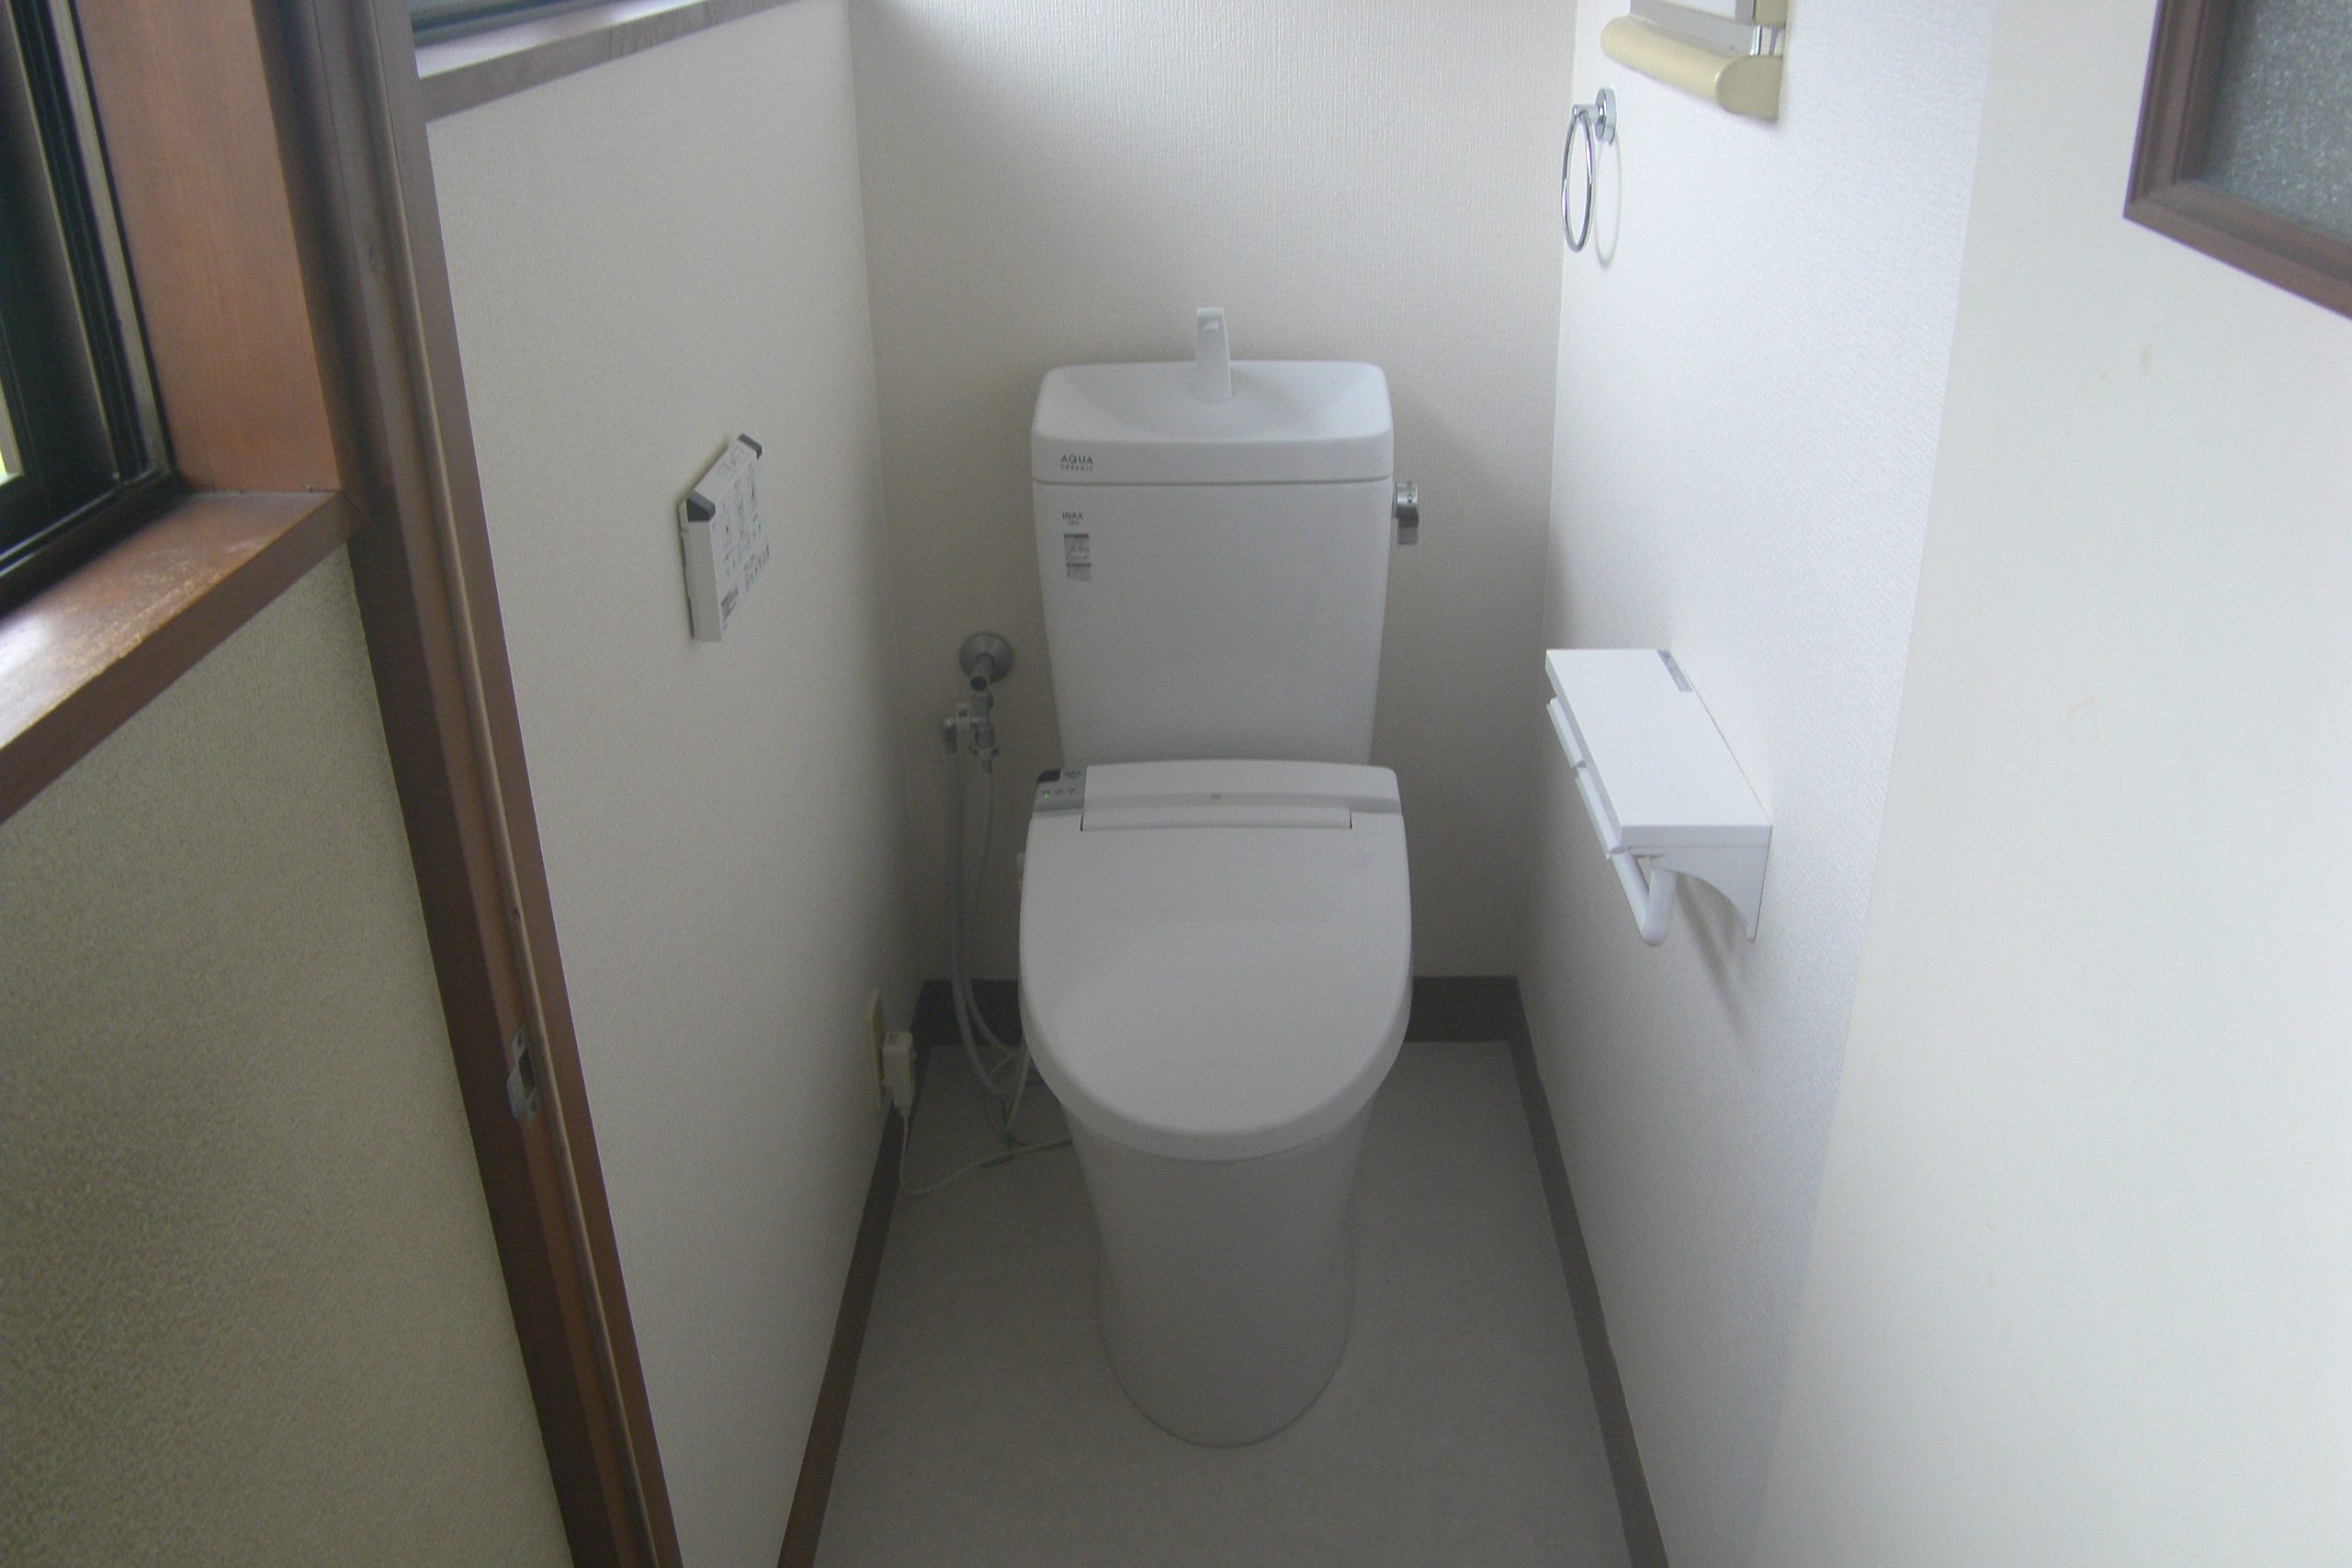 熊谷市E様邸トイレ改修工事を行いました。